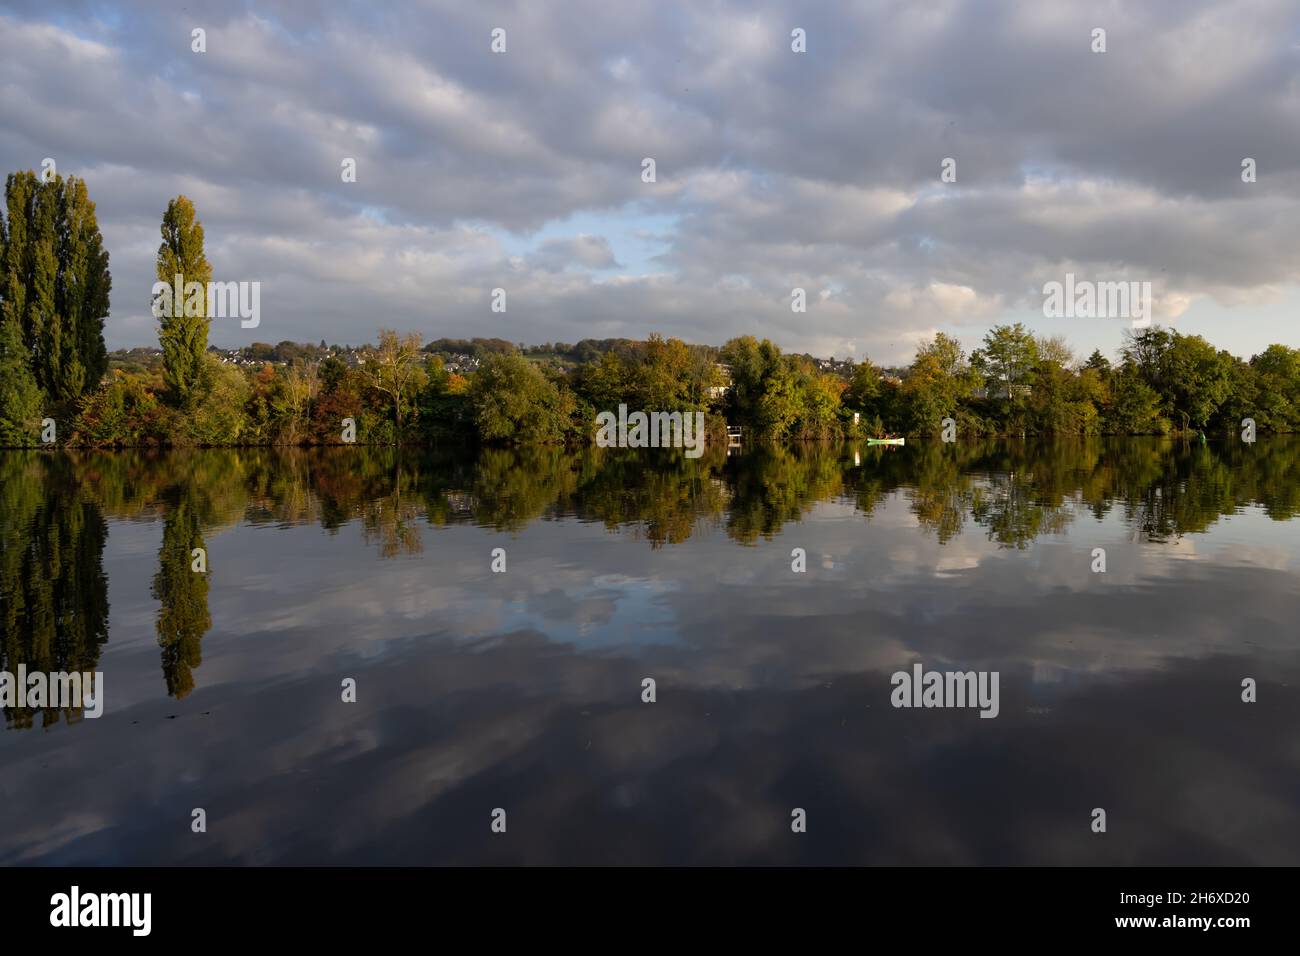 Vue sur la Ruhr sur le quartier d'Essen Kupferdreh en Allemagne.Le paysage se reflète dans l'eau.Panorama typique de l'automne. Banque D'Images